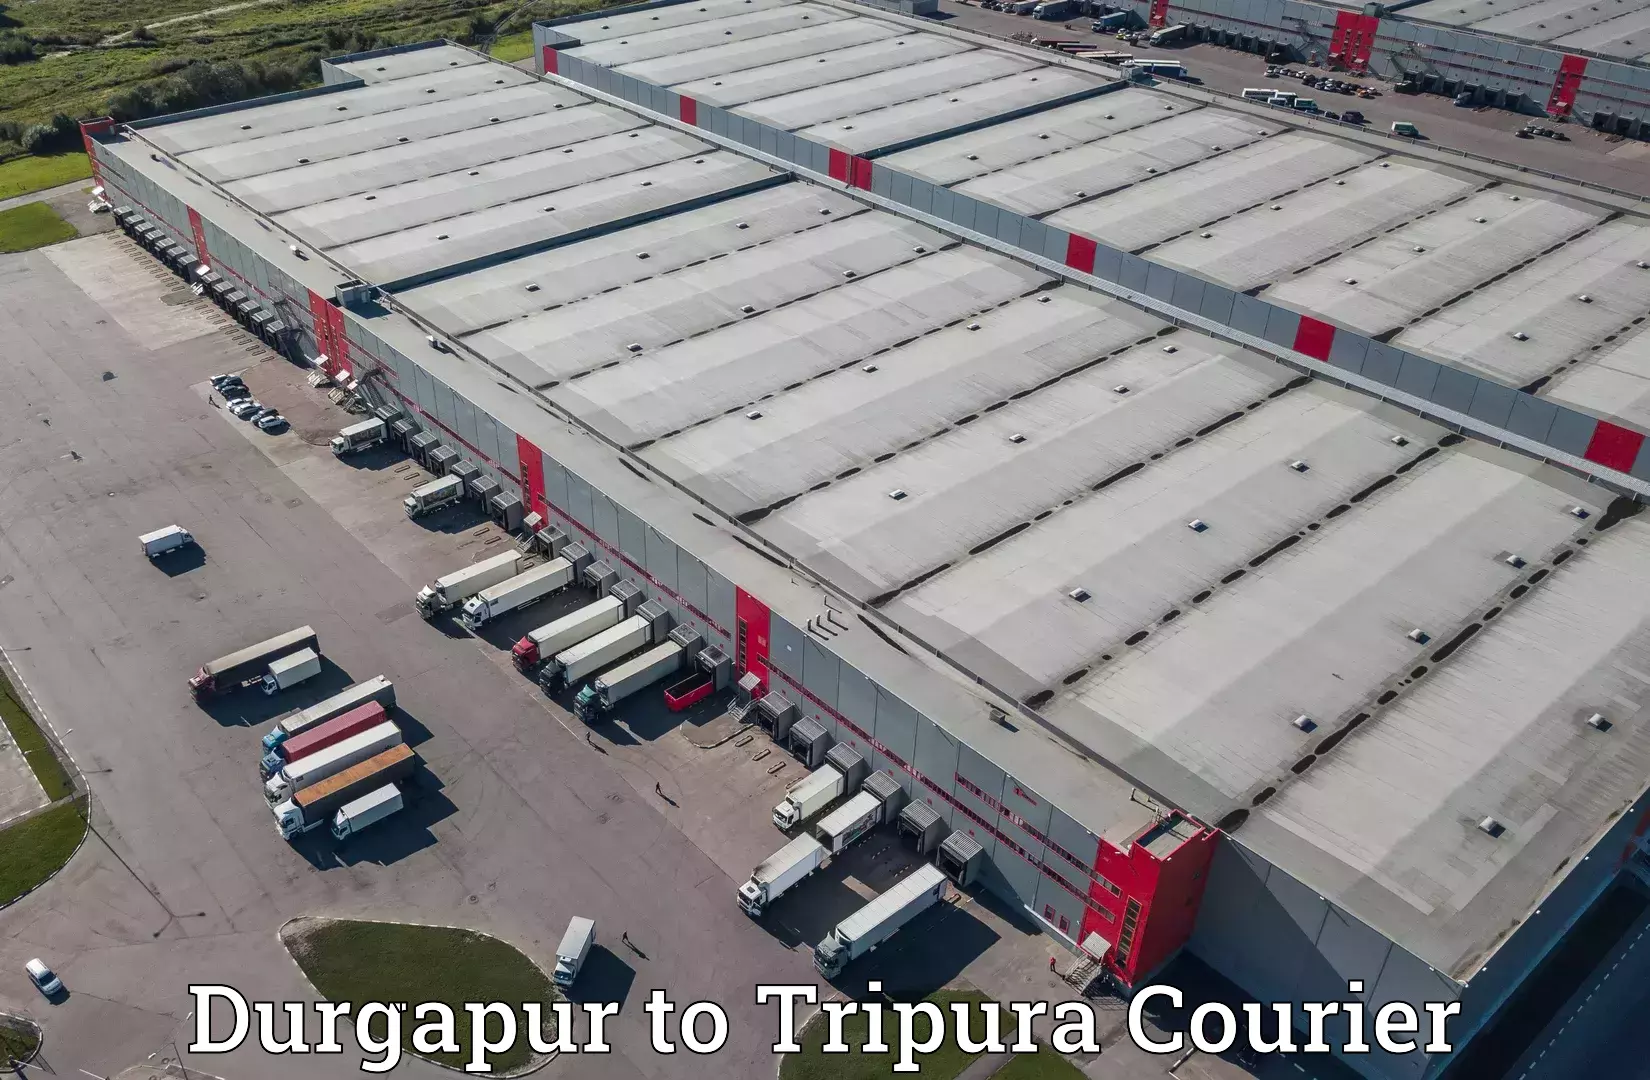 Automated parcel services Durgapur to Tripura